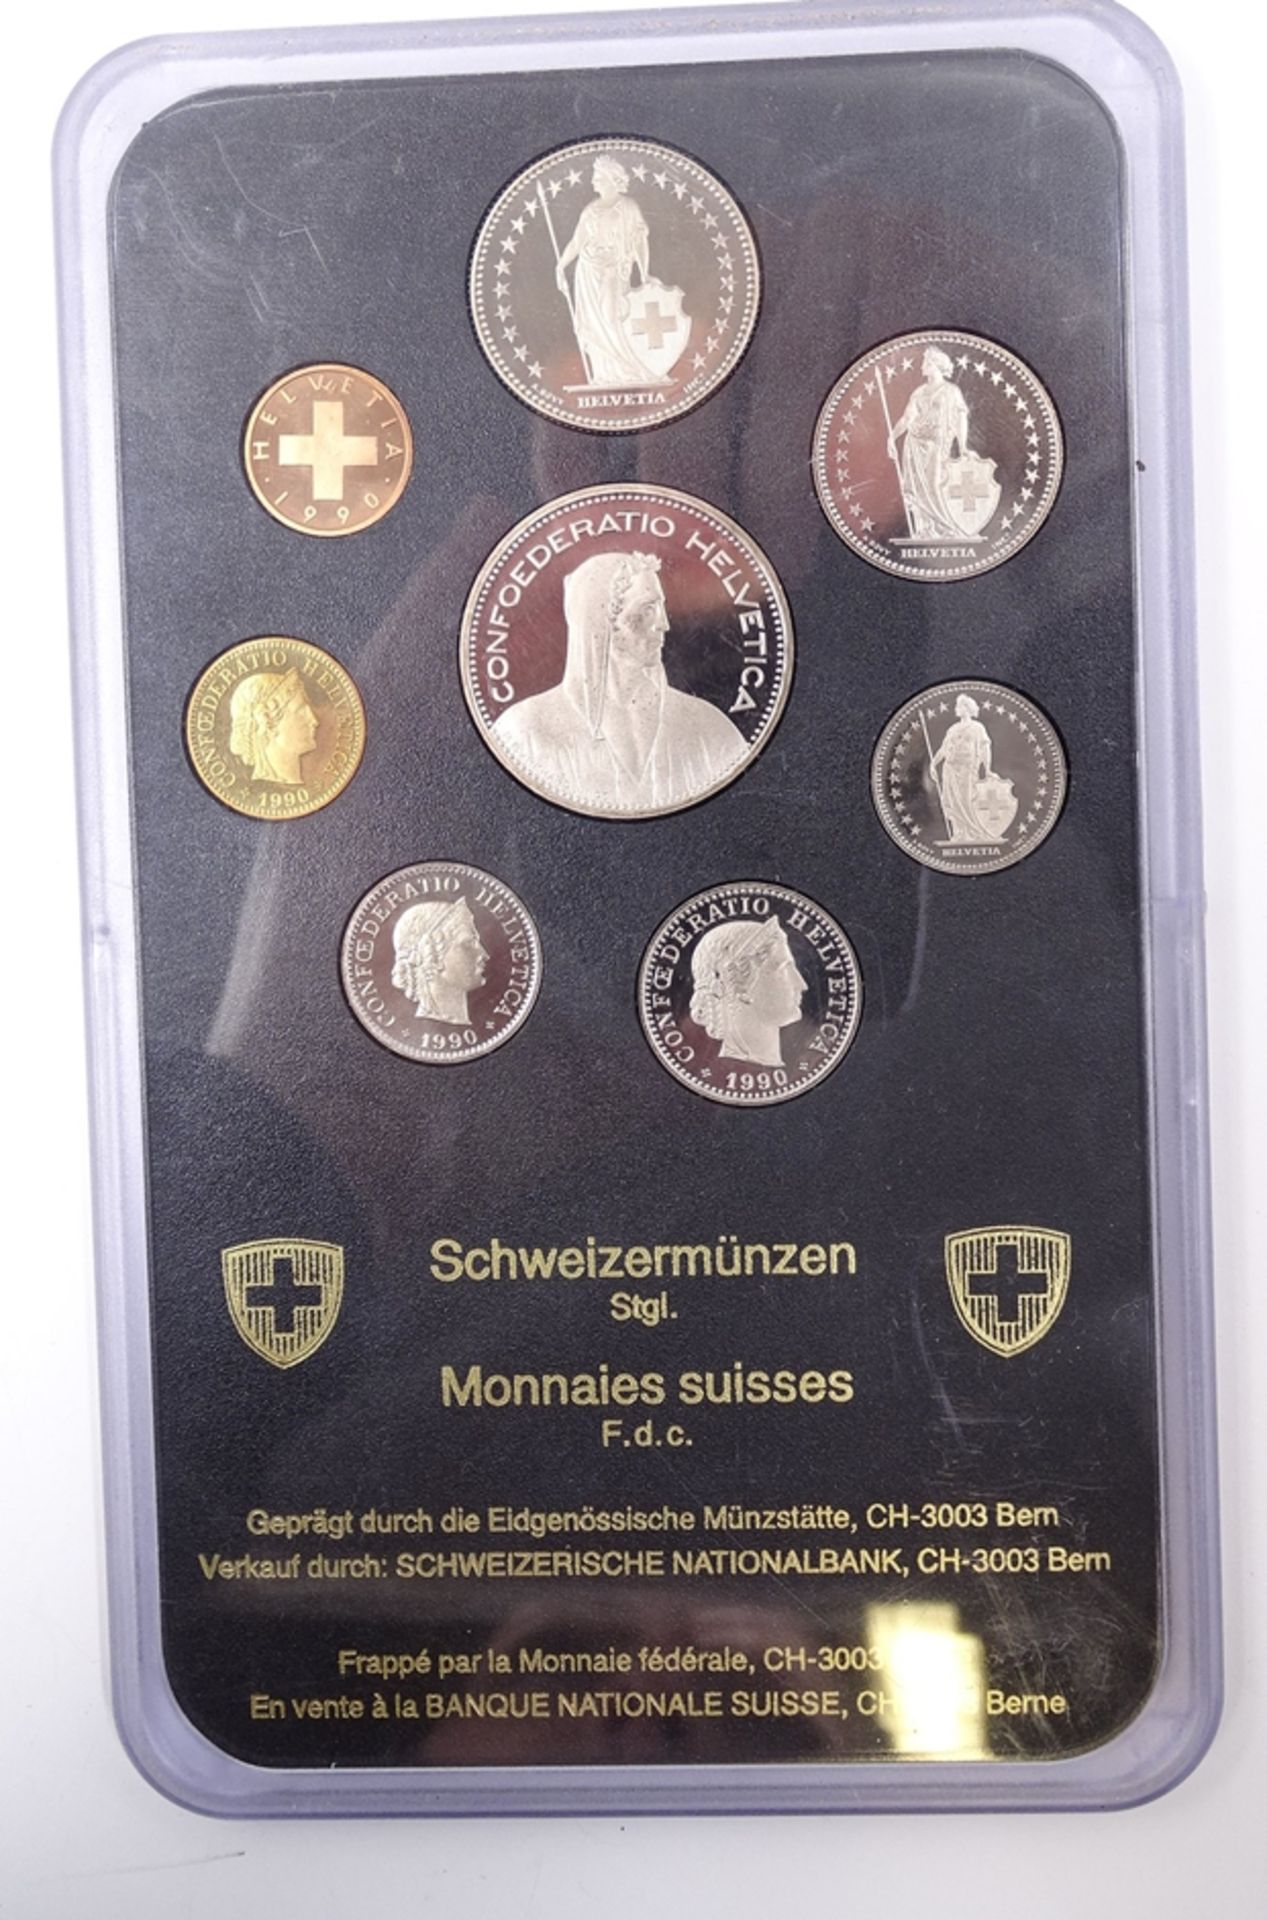 Münzsatz Schweizer Franken 1990, 8,86 CHF, in Schatulle